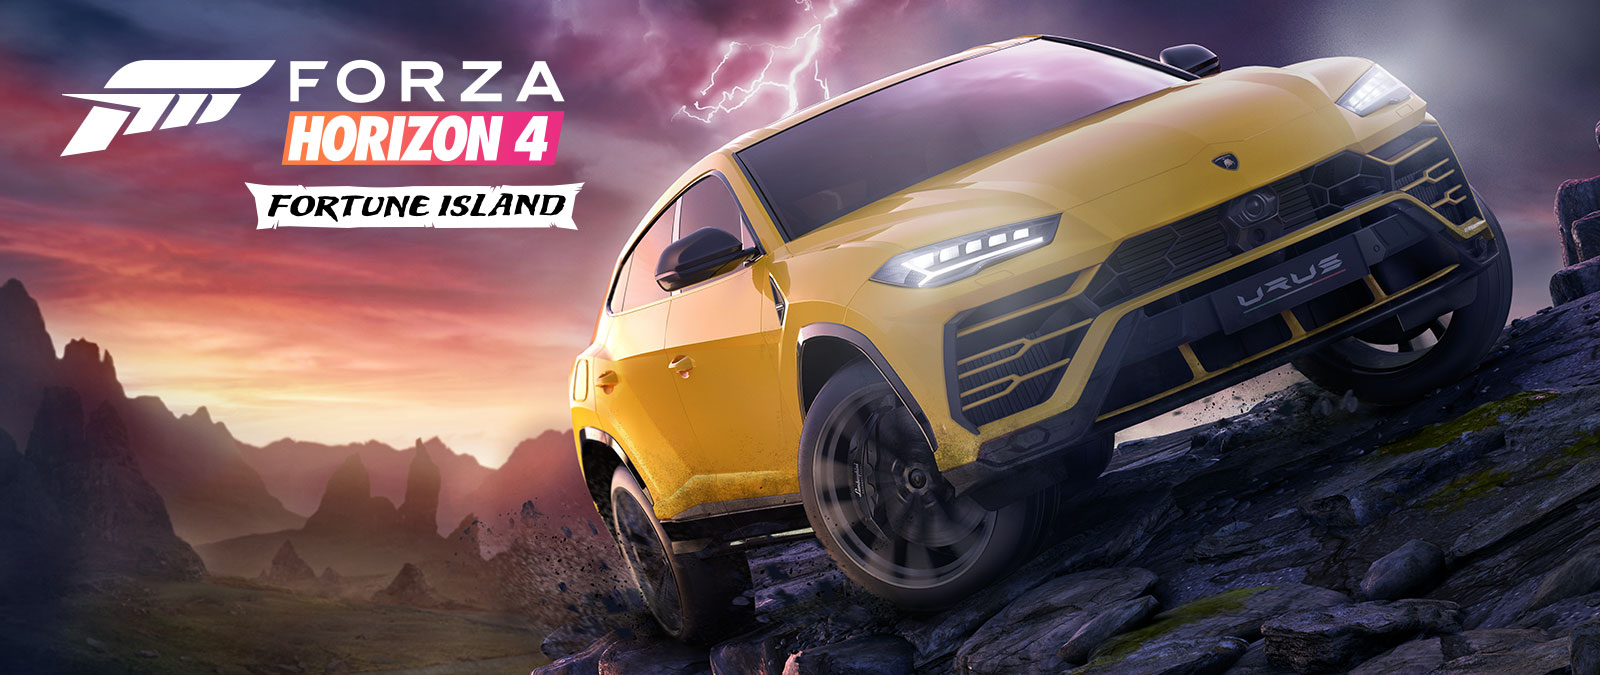 Forza Horizon 4 Fortune Island, en gul Lamborghini Urus kjører gjennom forrædersk terreng med lyn i bakgrunnen